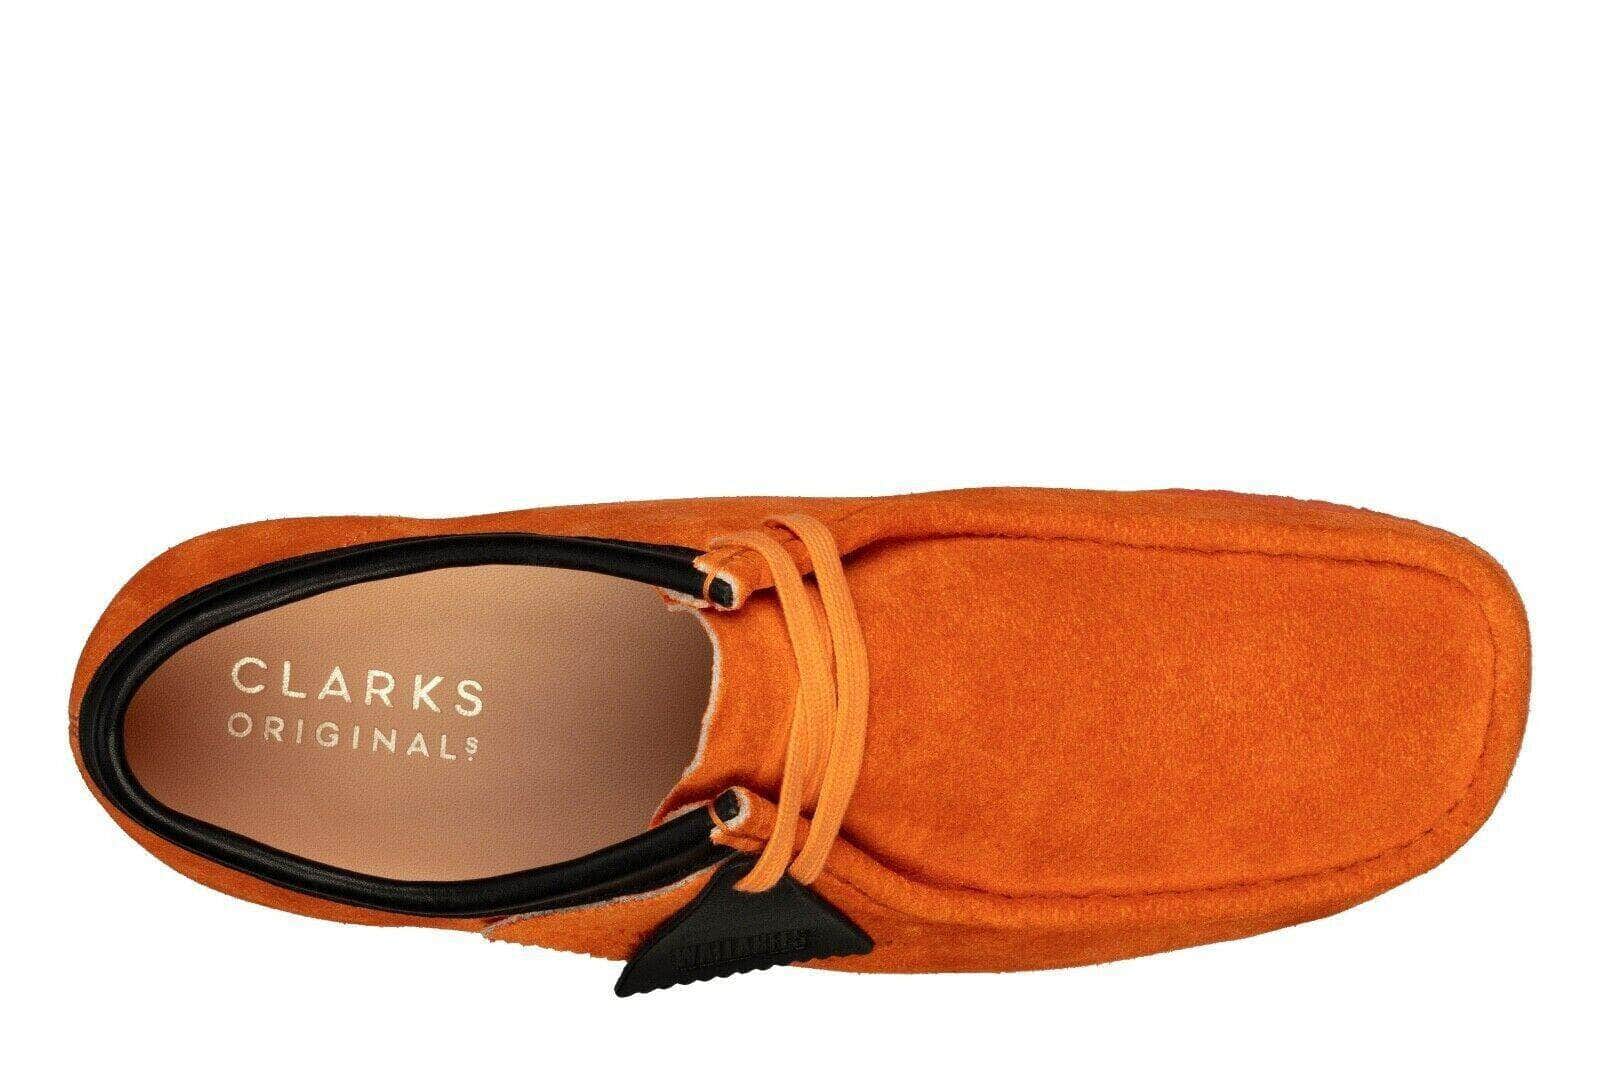 Clarks FOOTWEAR Clarks Originals Wallabee Shoes - Men's